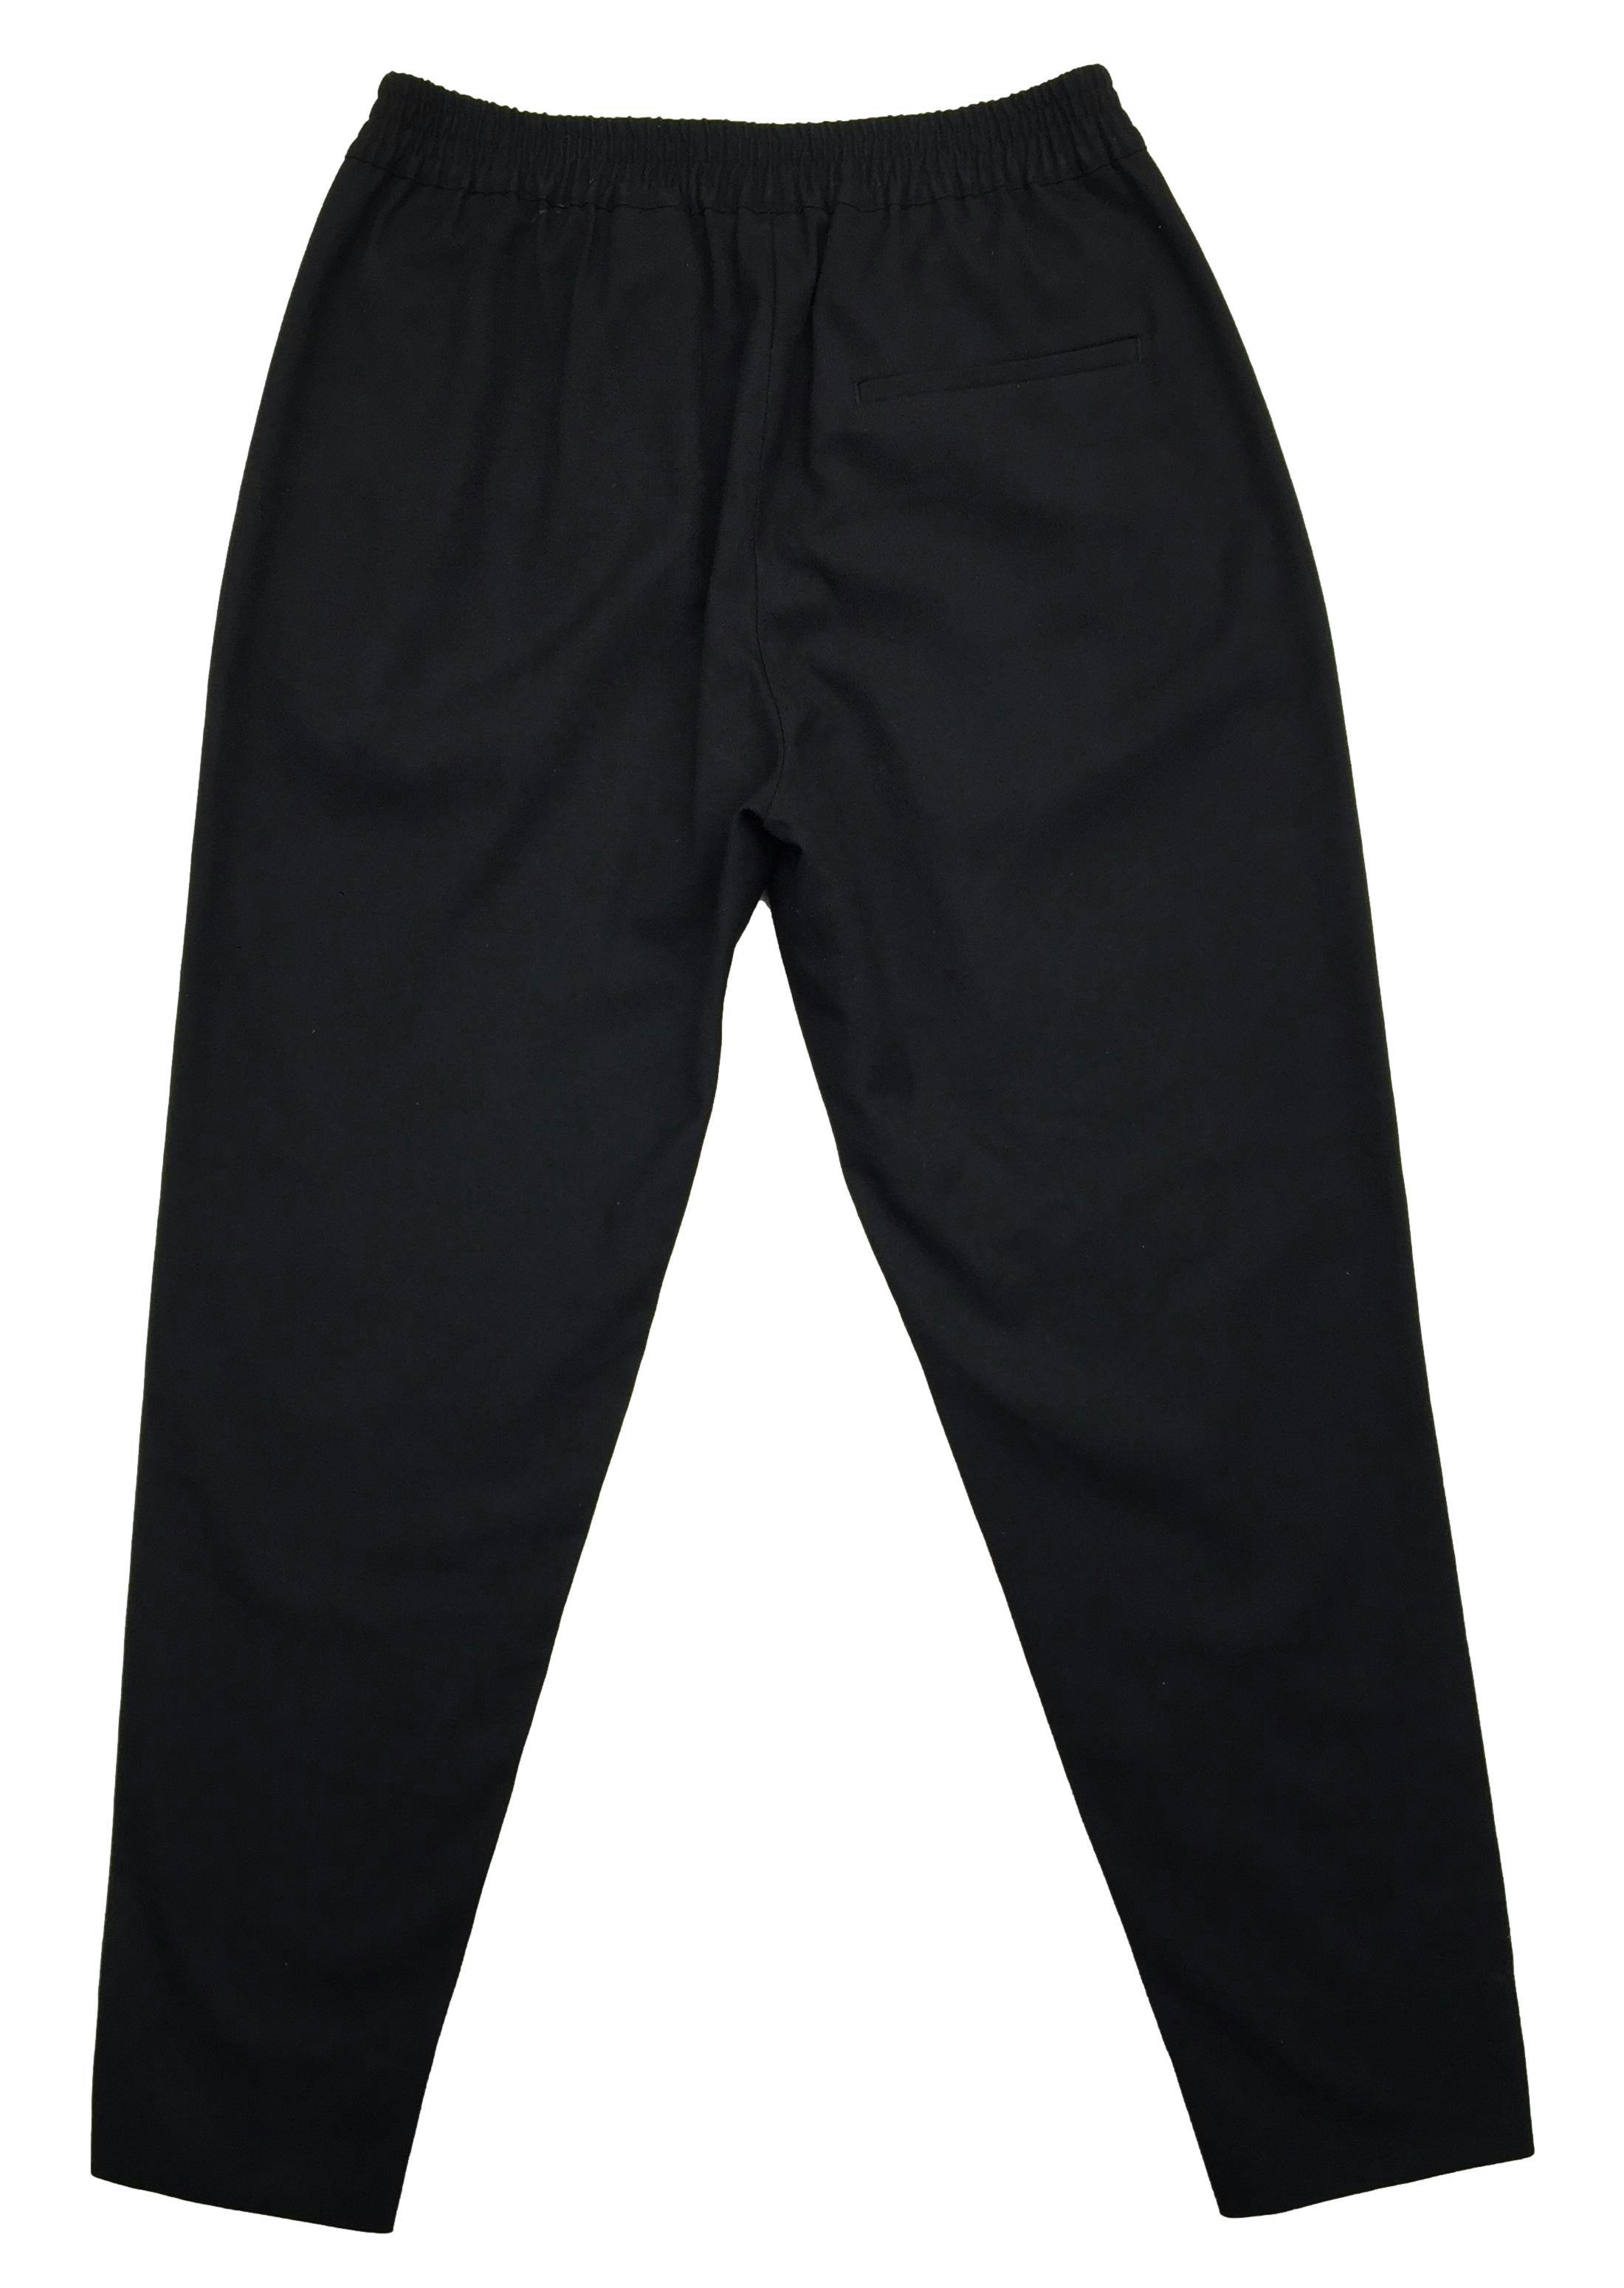 Pantalón H&M negro, elástico en la cintura y bolsillos delanteros. Cintura: 62cm (sin estirar), Tiro: 23cm, Largo: 88cm.